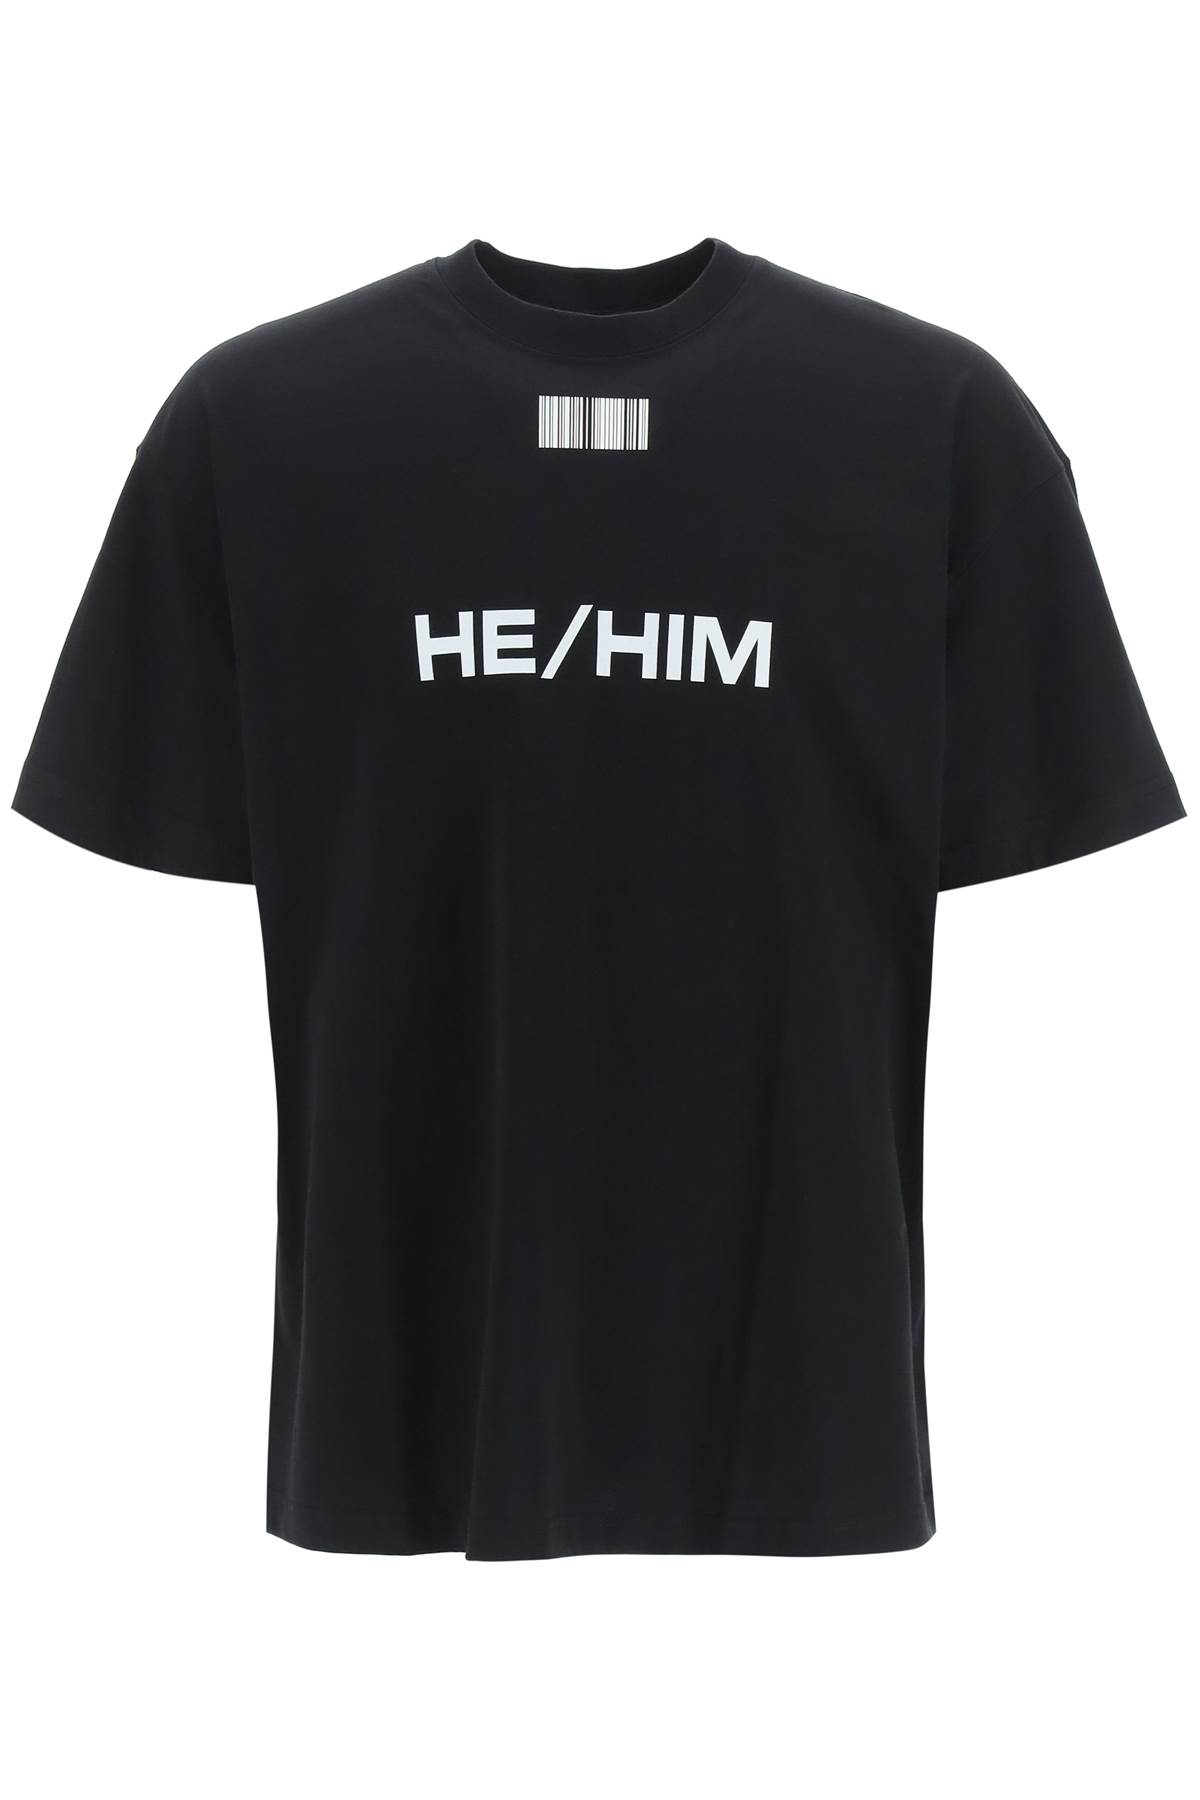 VTMNTS He/him Print T-shirt